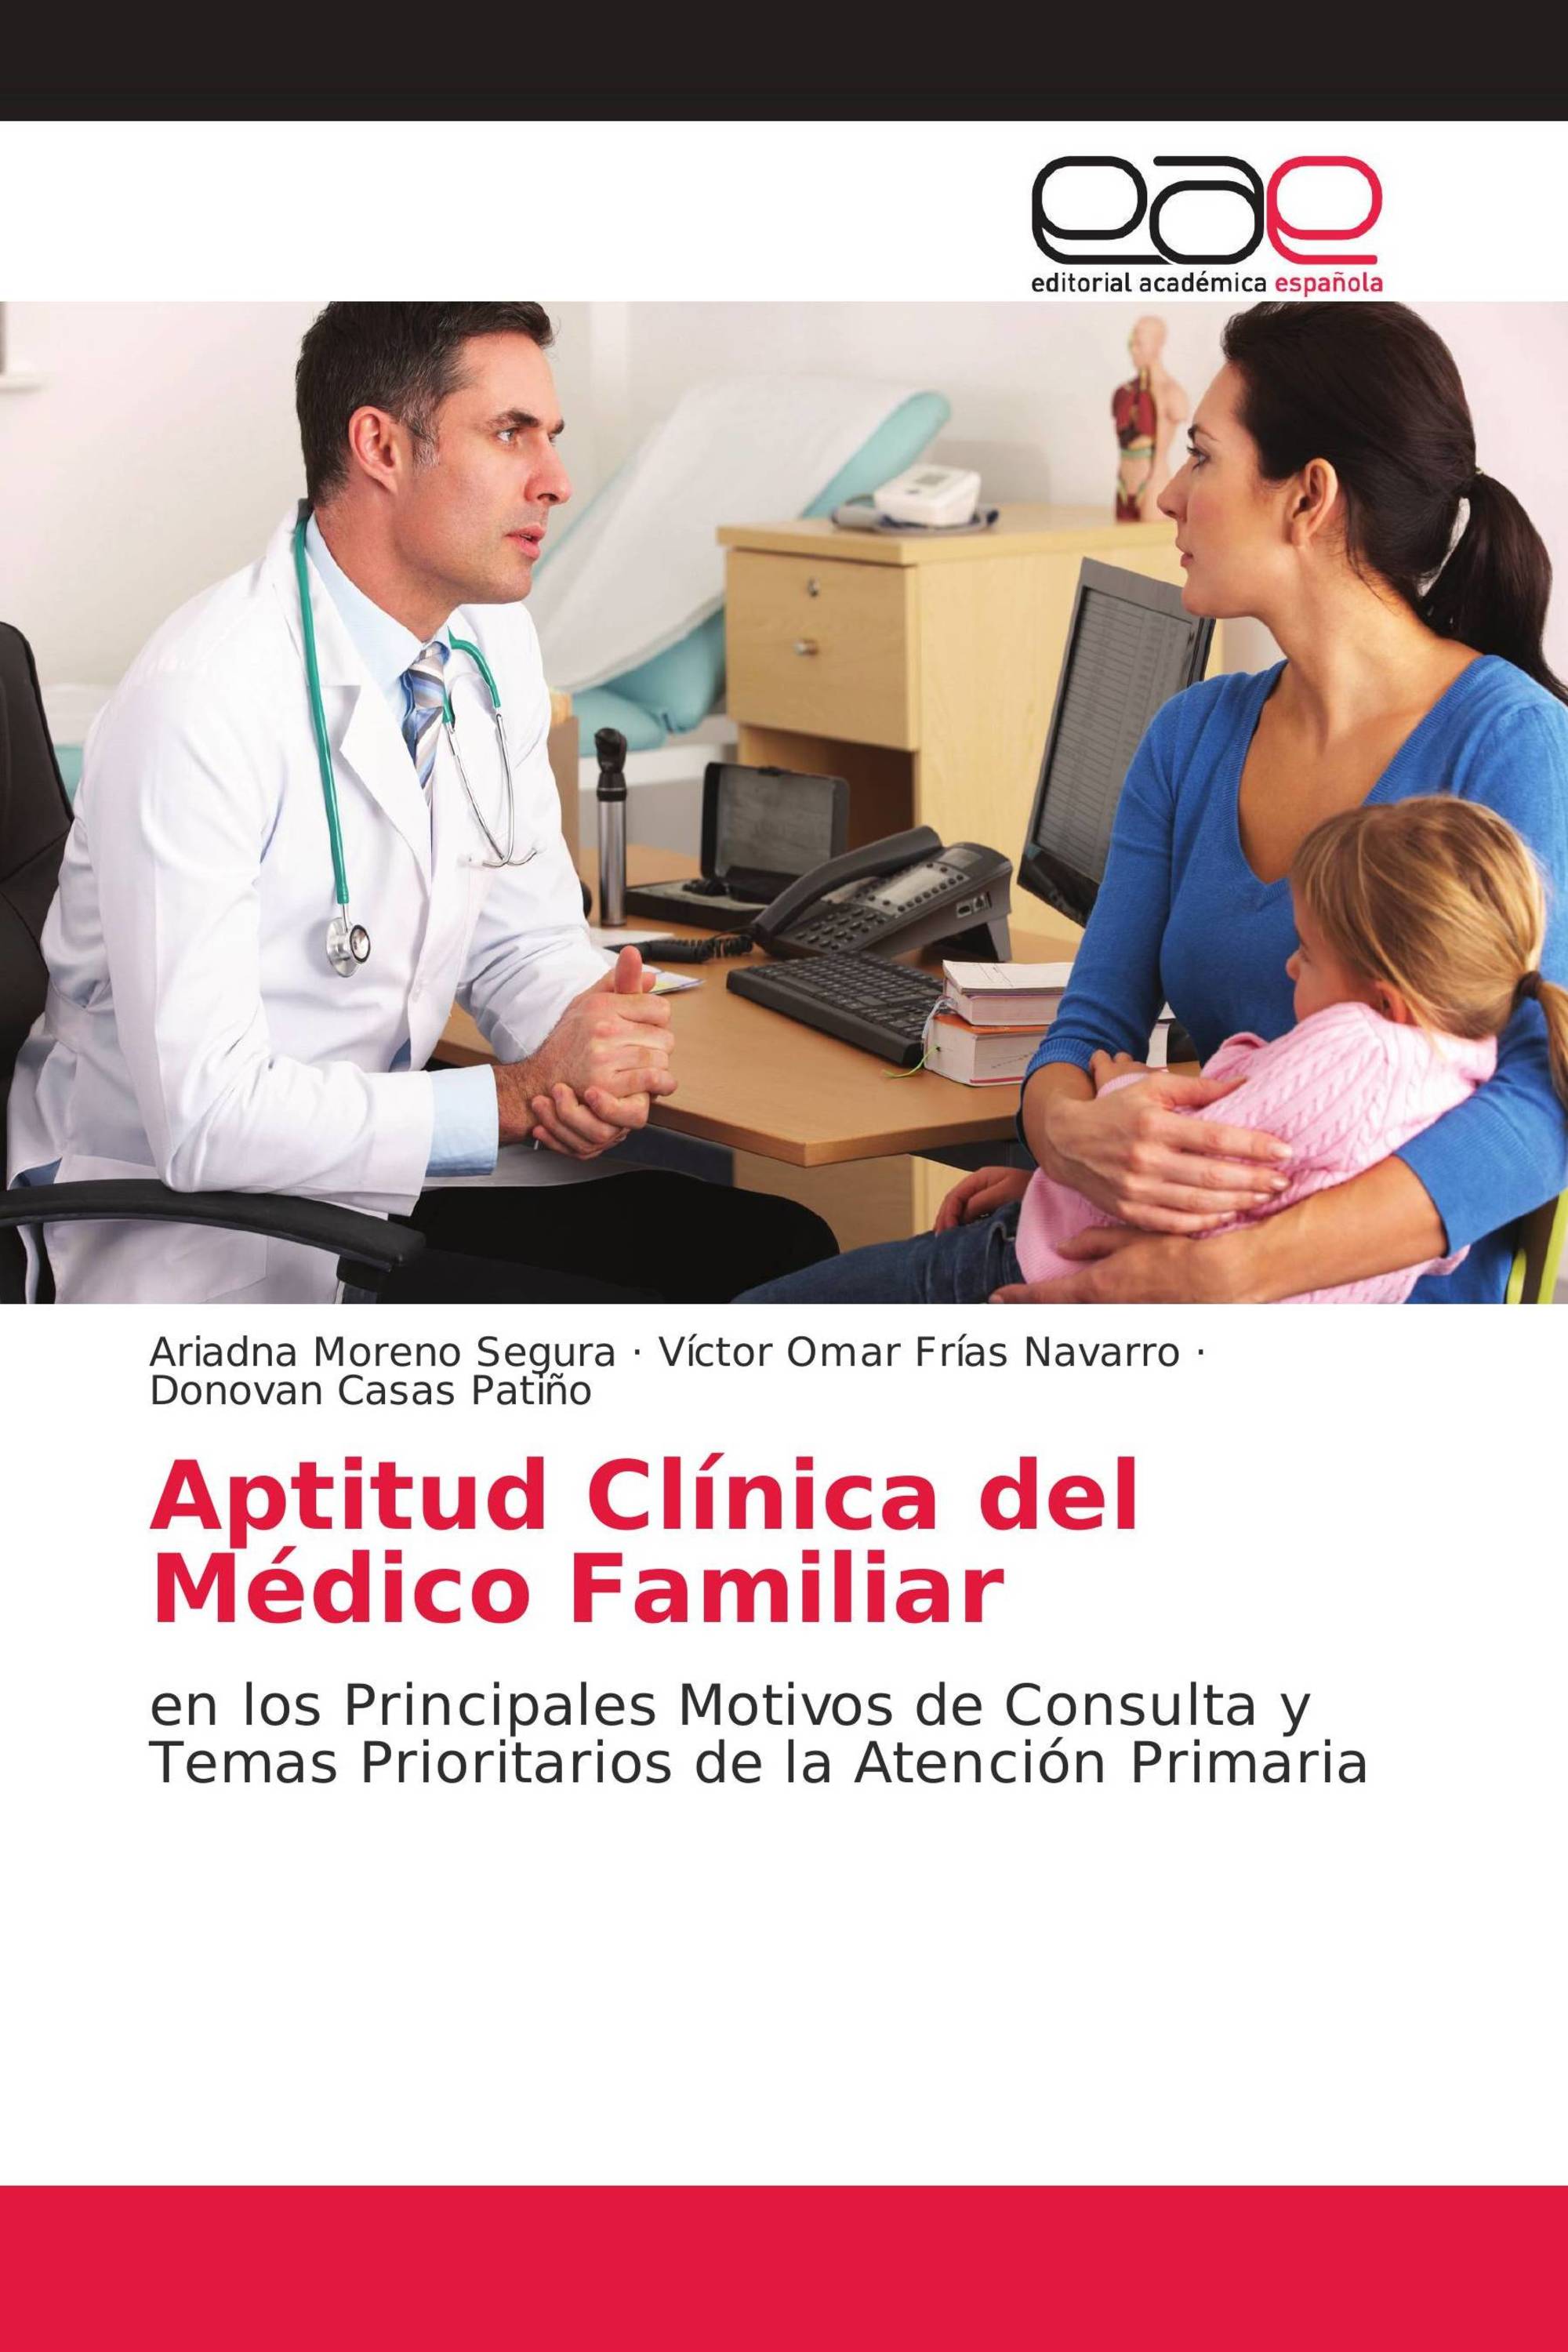 Aptitud Clínica del Médico Familiar